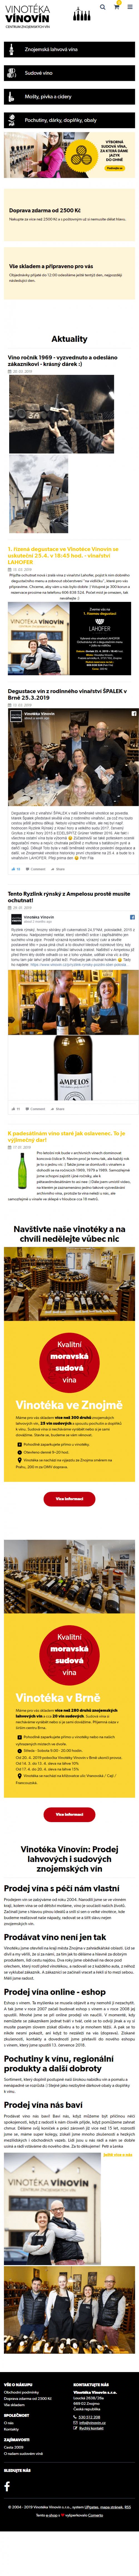 Tvorba nového e-shopu vinovin.cz - Screenshot mobilní verze